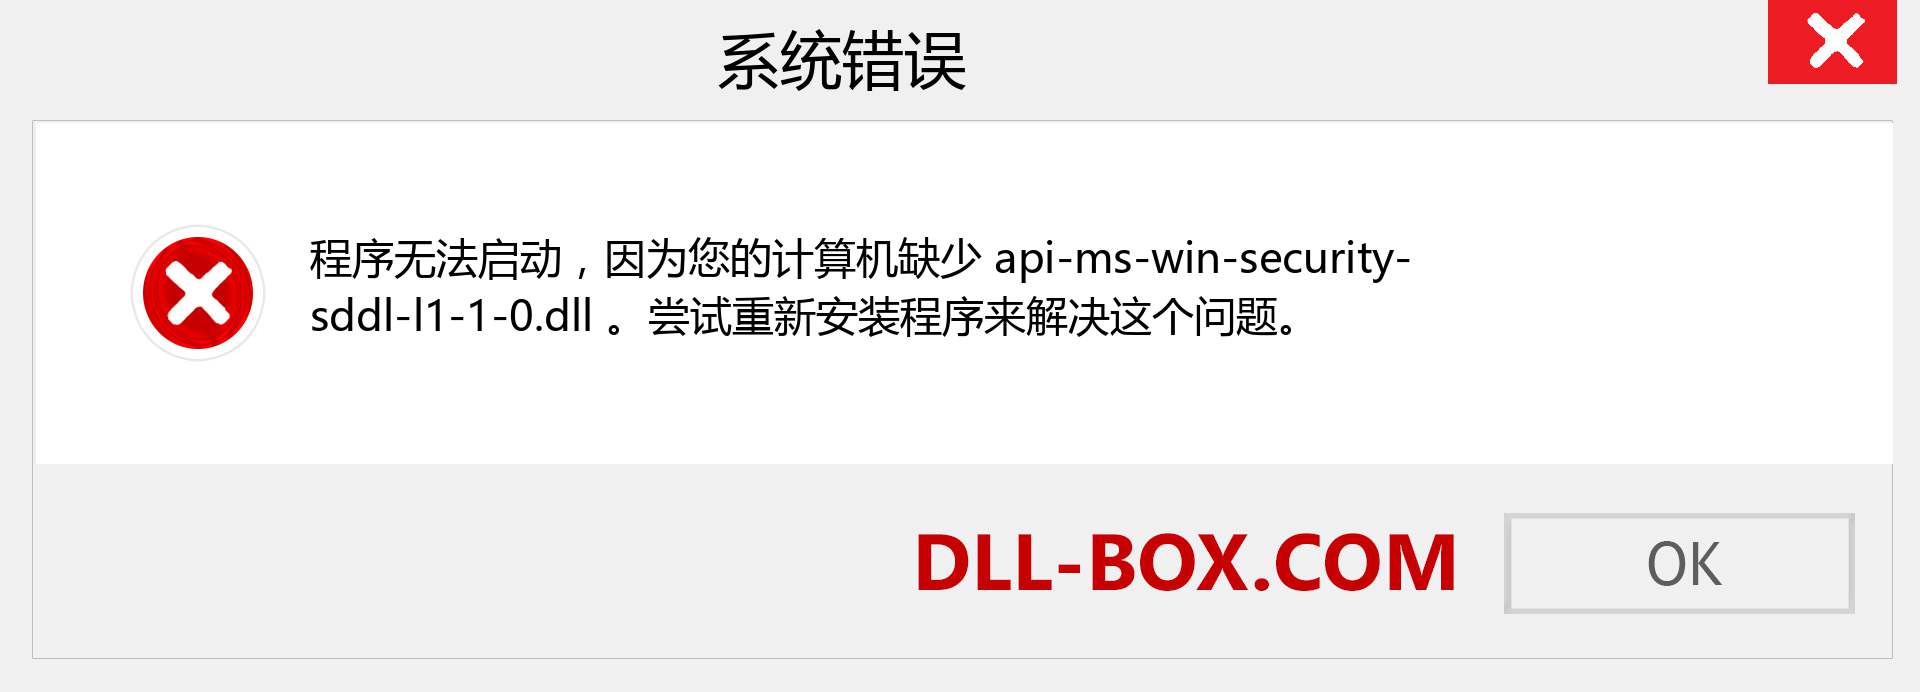 api-ms-win-security-sddl-l1-1-0.dll 文件丢失？。 适用于 Windows 7、8、10 的下载 - 修复 Windows、照片、图像上的 api-ms-win-security-sddl-l1-1-0 dll 丢失错误